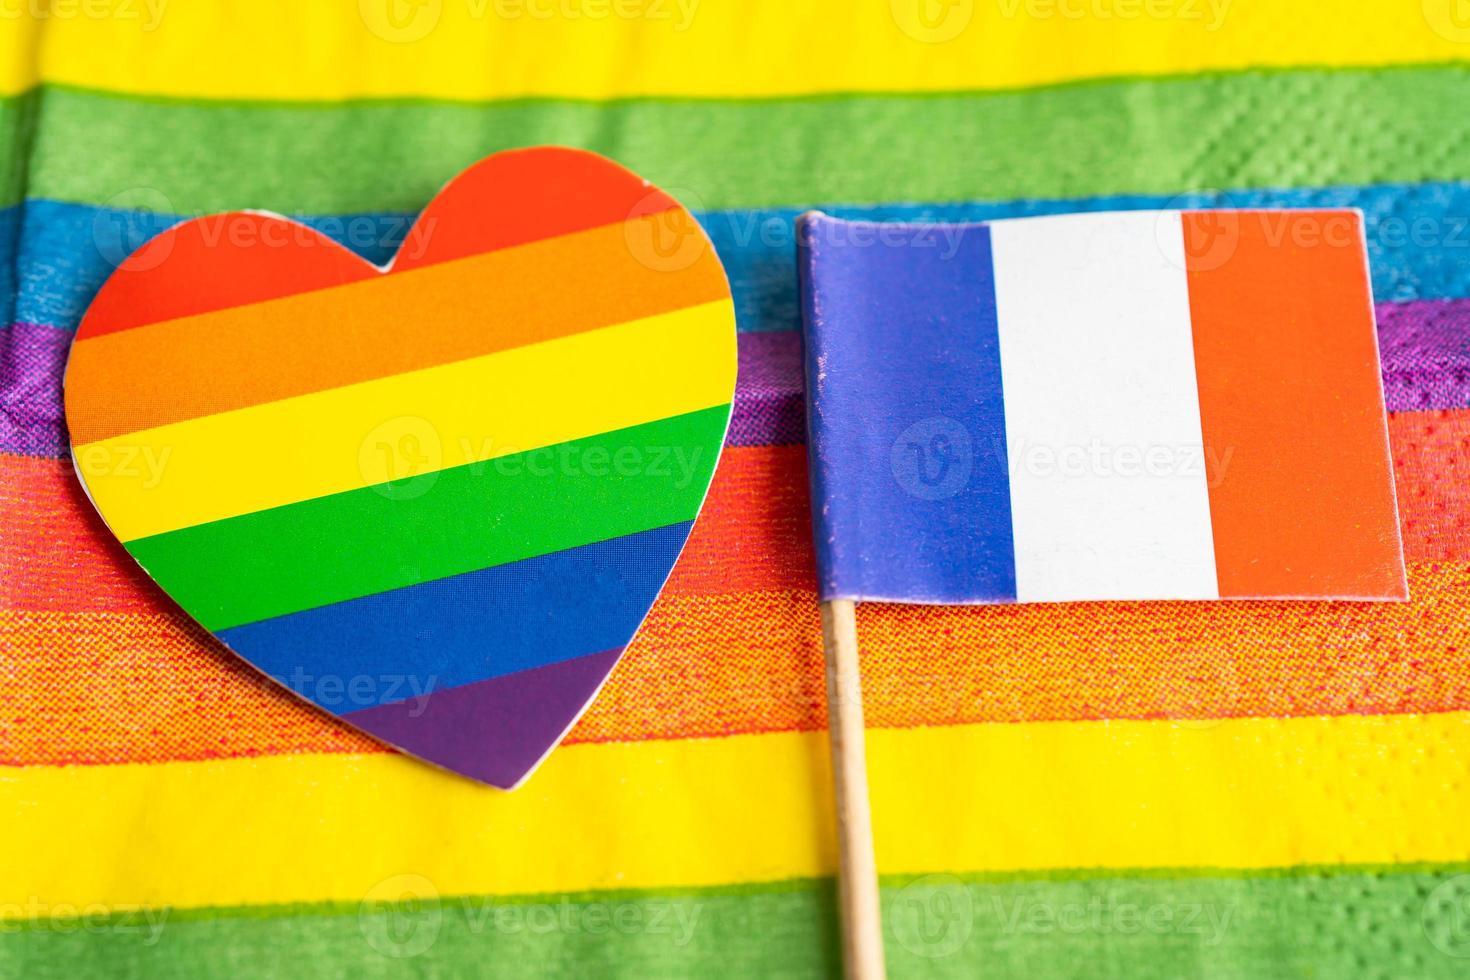 bandeira da frança no fundo do arco-íris símbolo do movimento social do mês do orgulho gay lgbt a bandeira do arco-íris é um símbolo de lésbicas, gays, bissexuais, transgêneros, direitos humanos, tolerância e paz. foto